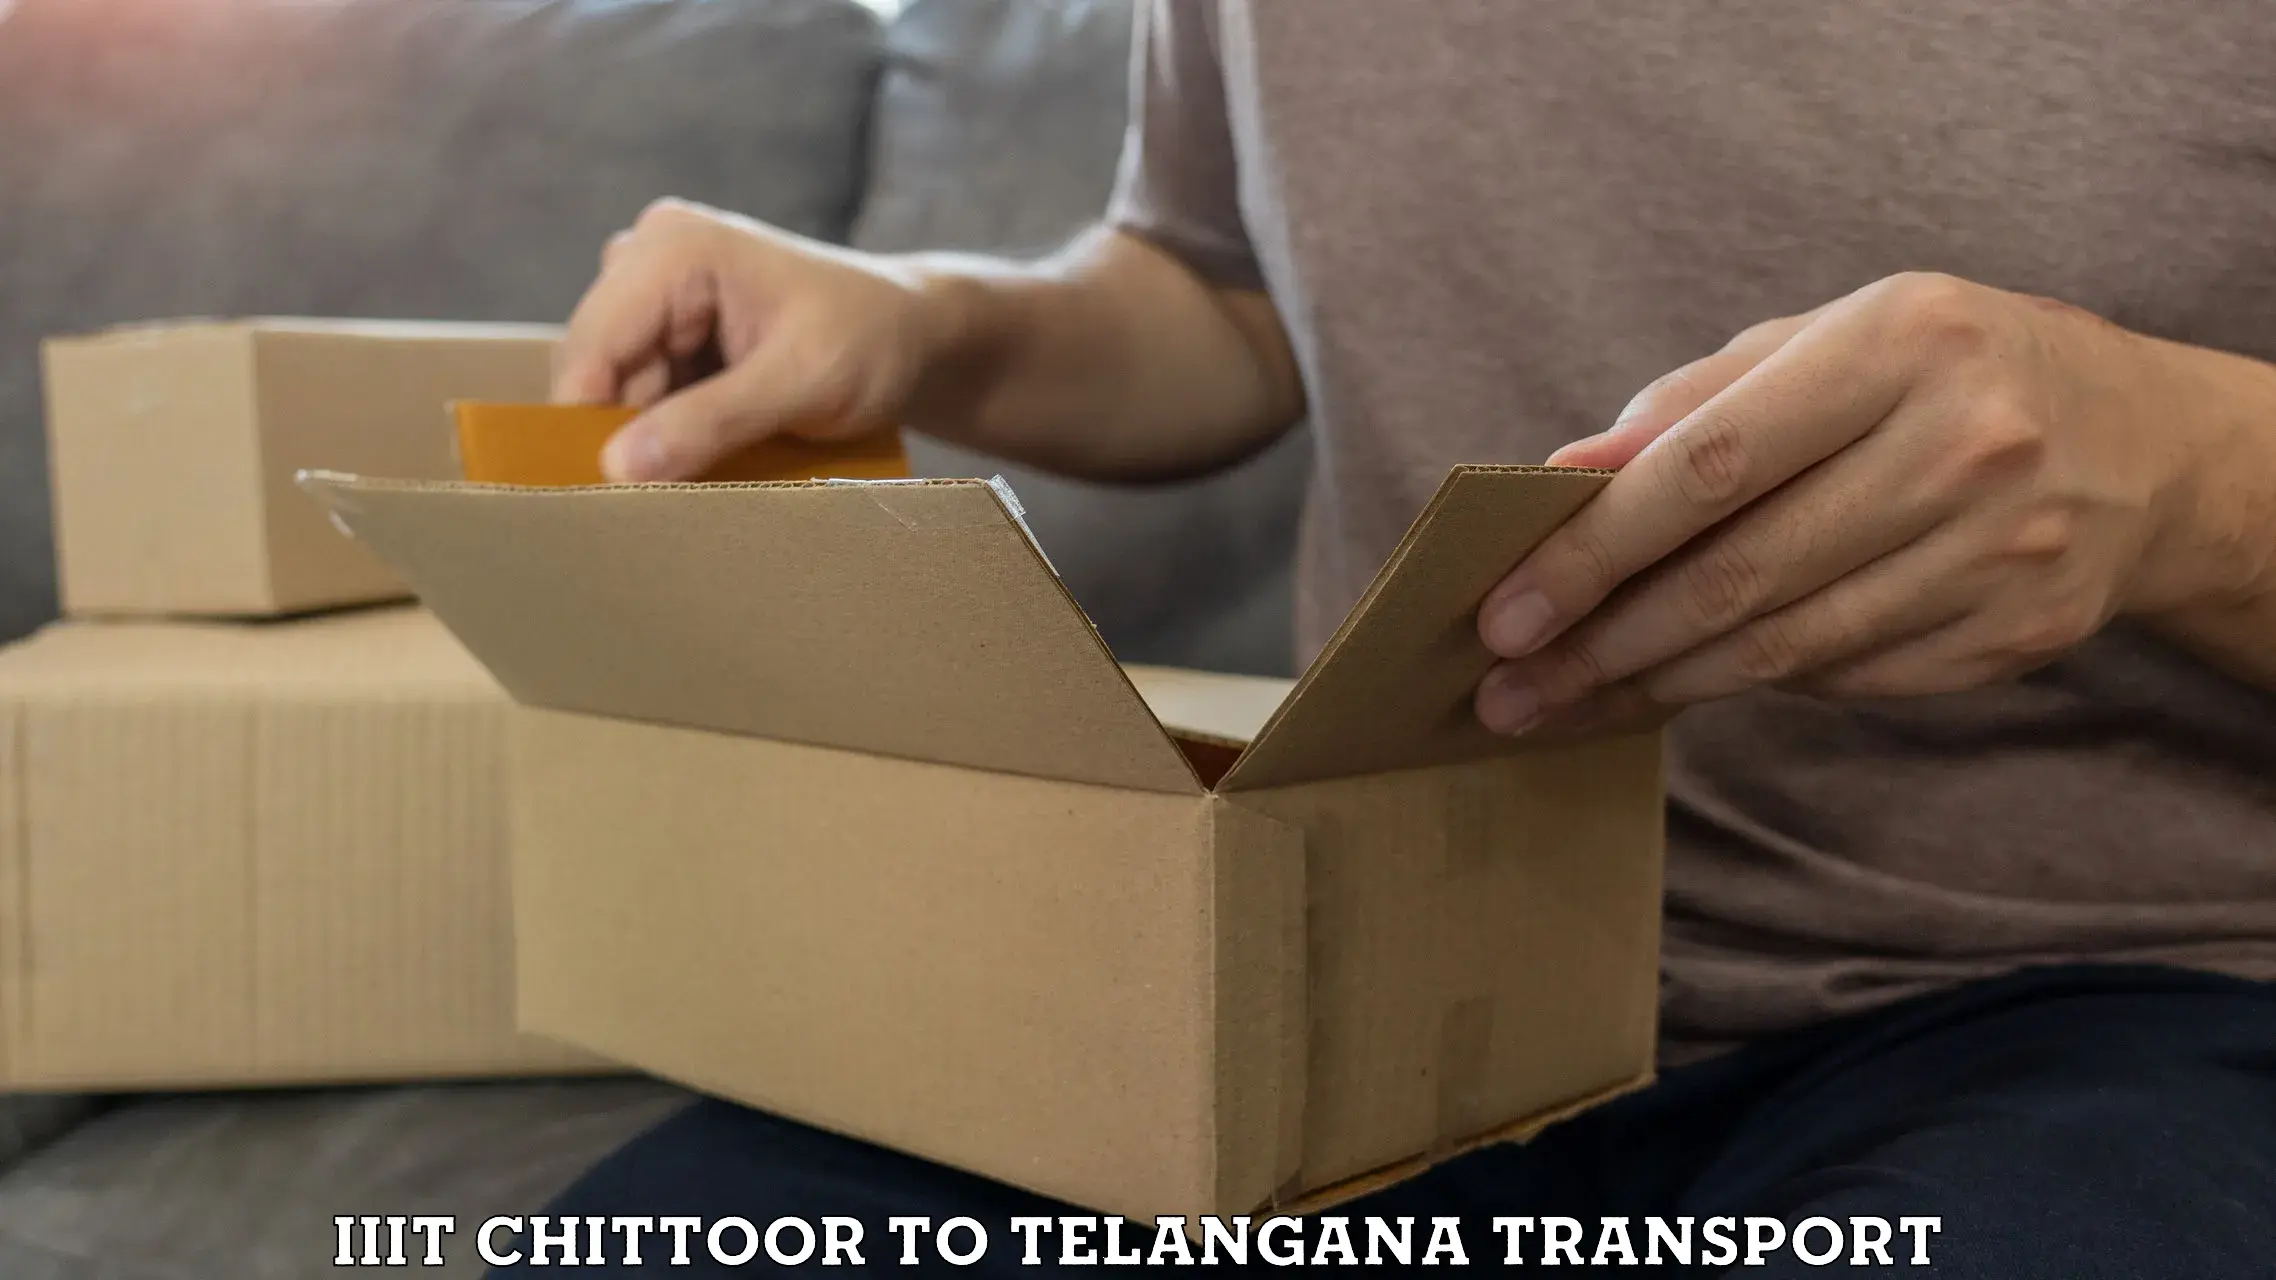 Transport shared services IIIT Chittoor to Chennur